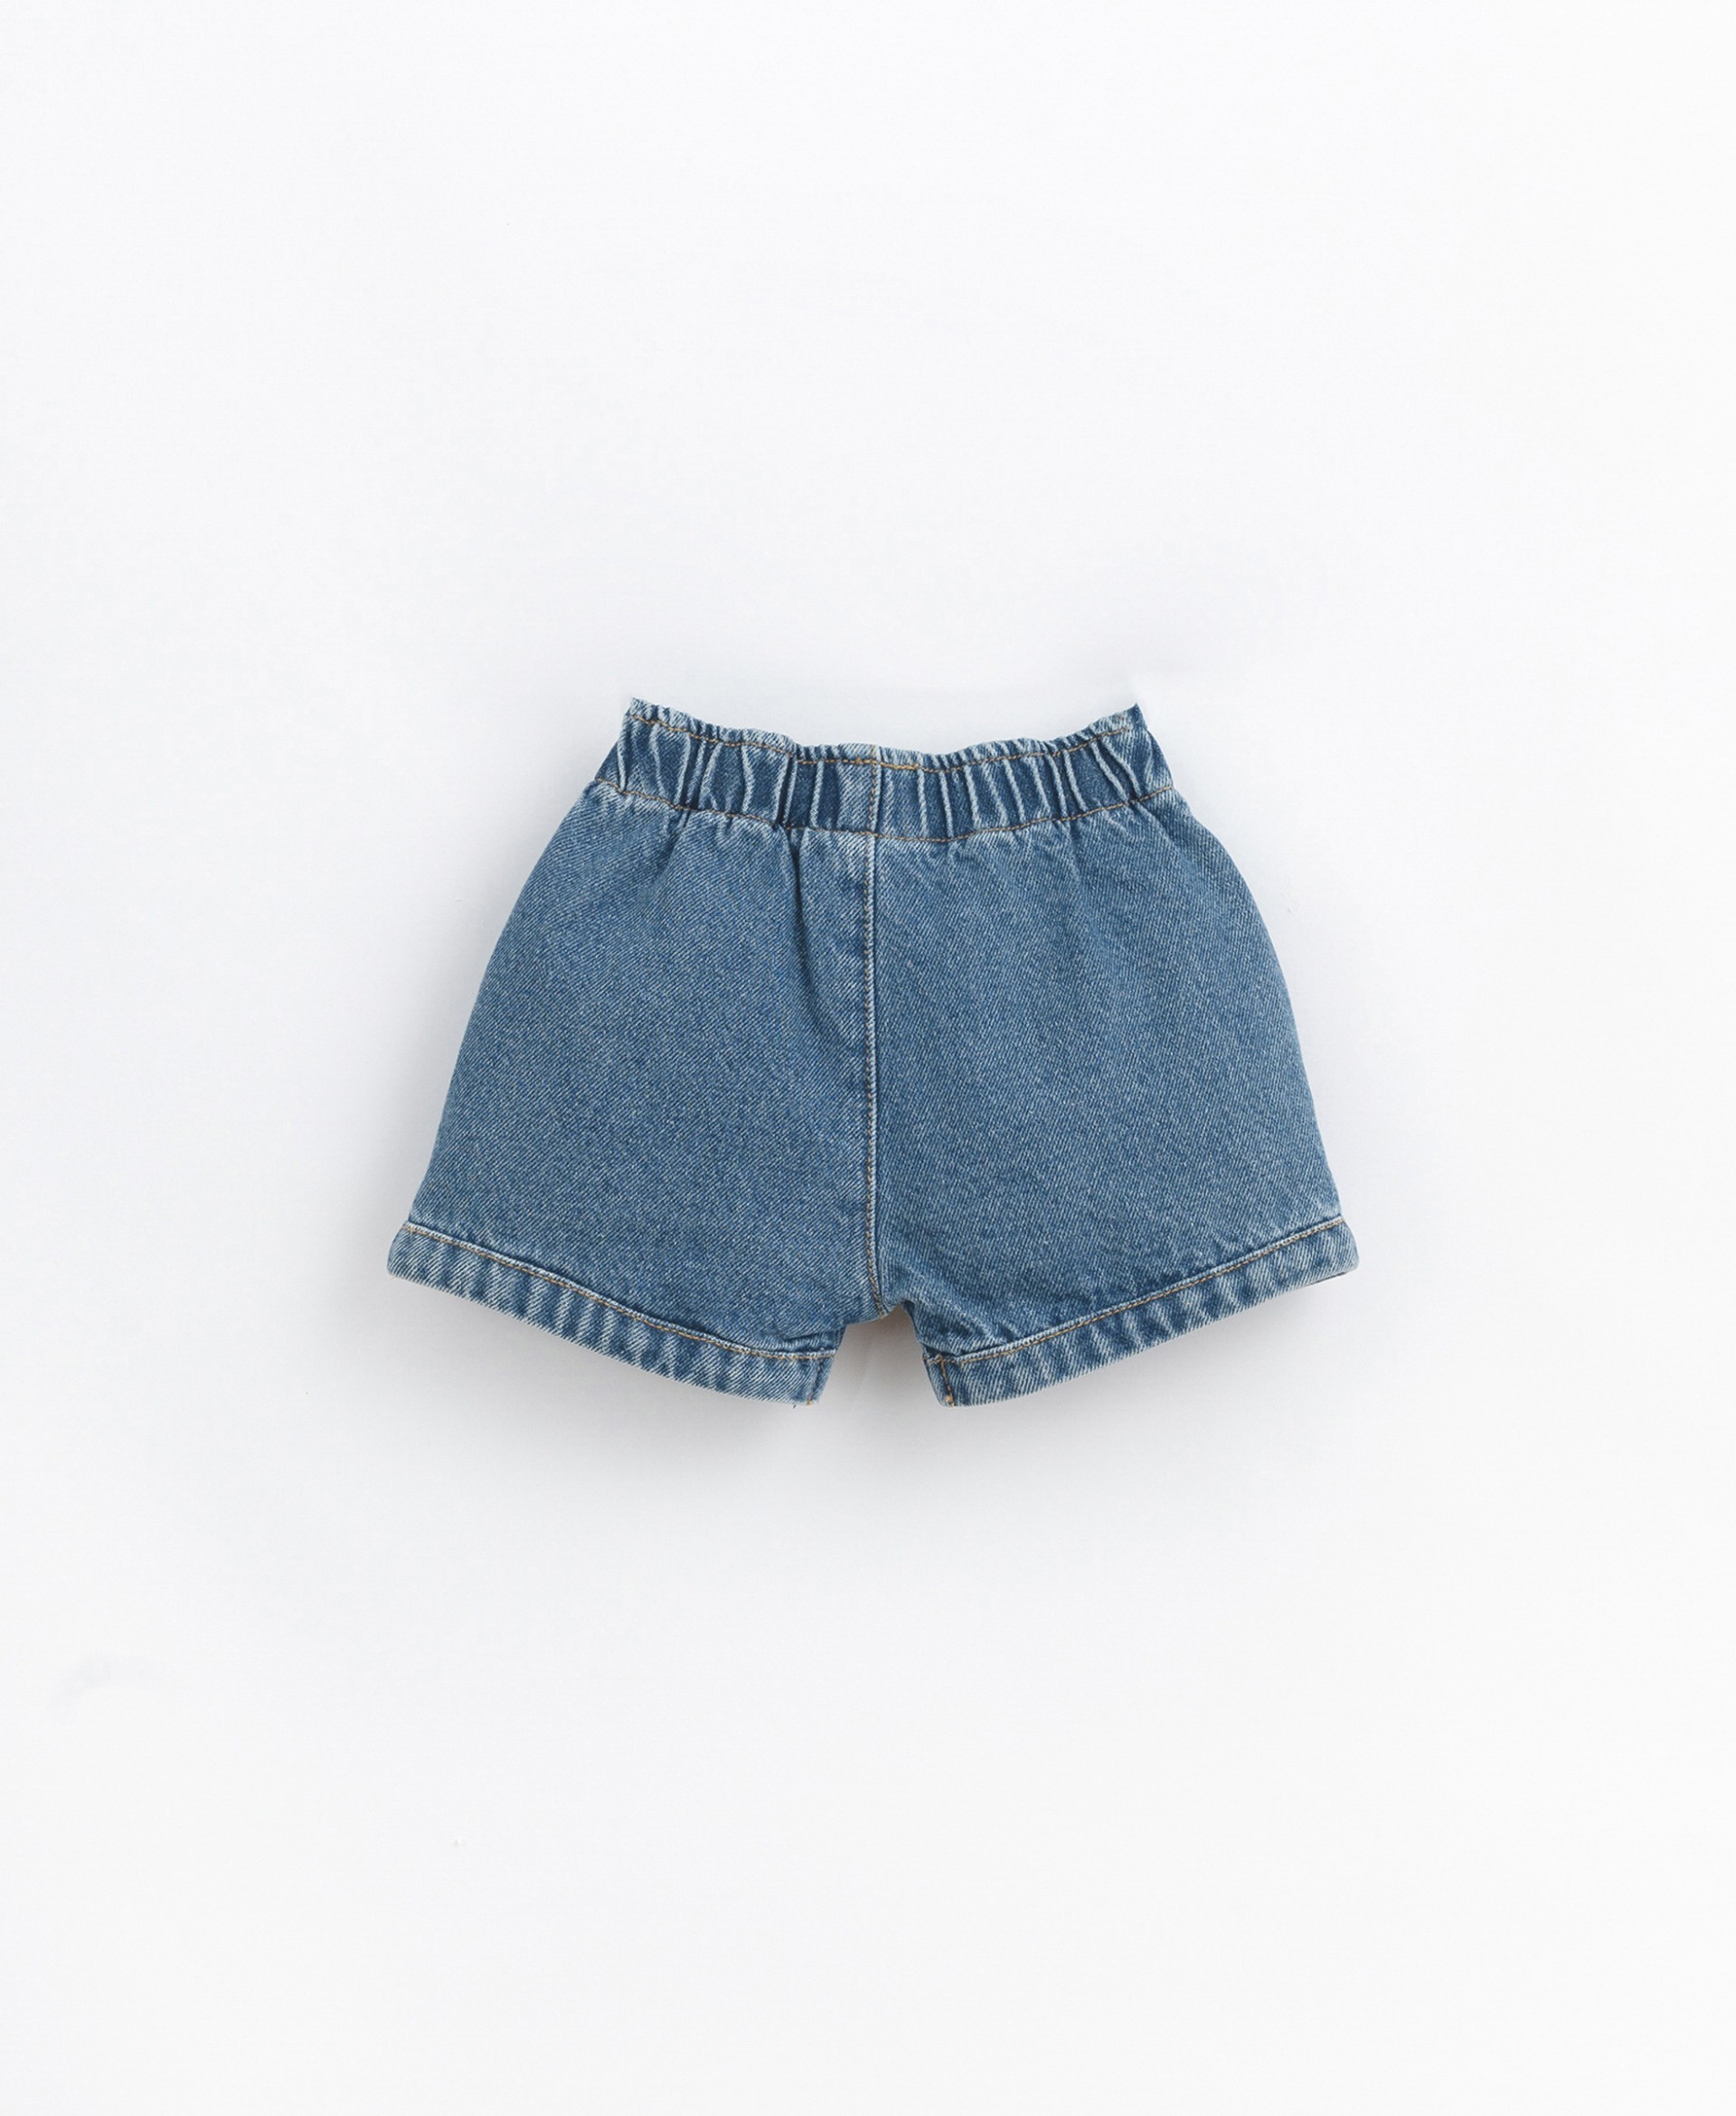 Pantalones cortos vaqueros de algodón | Basketry 